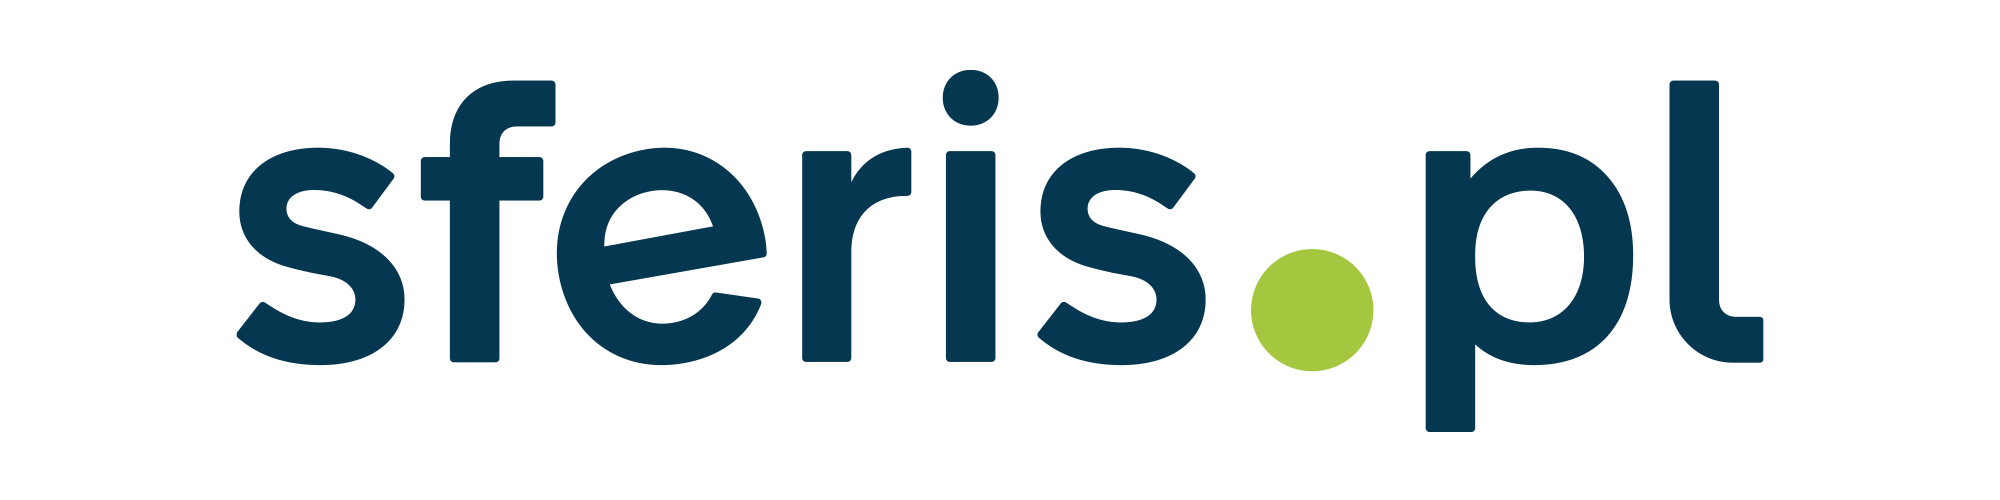 logo_sferis